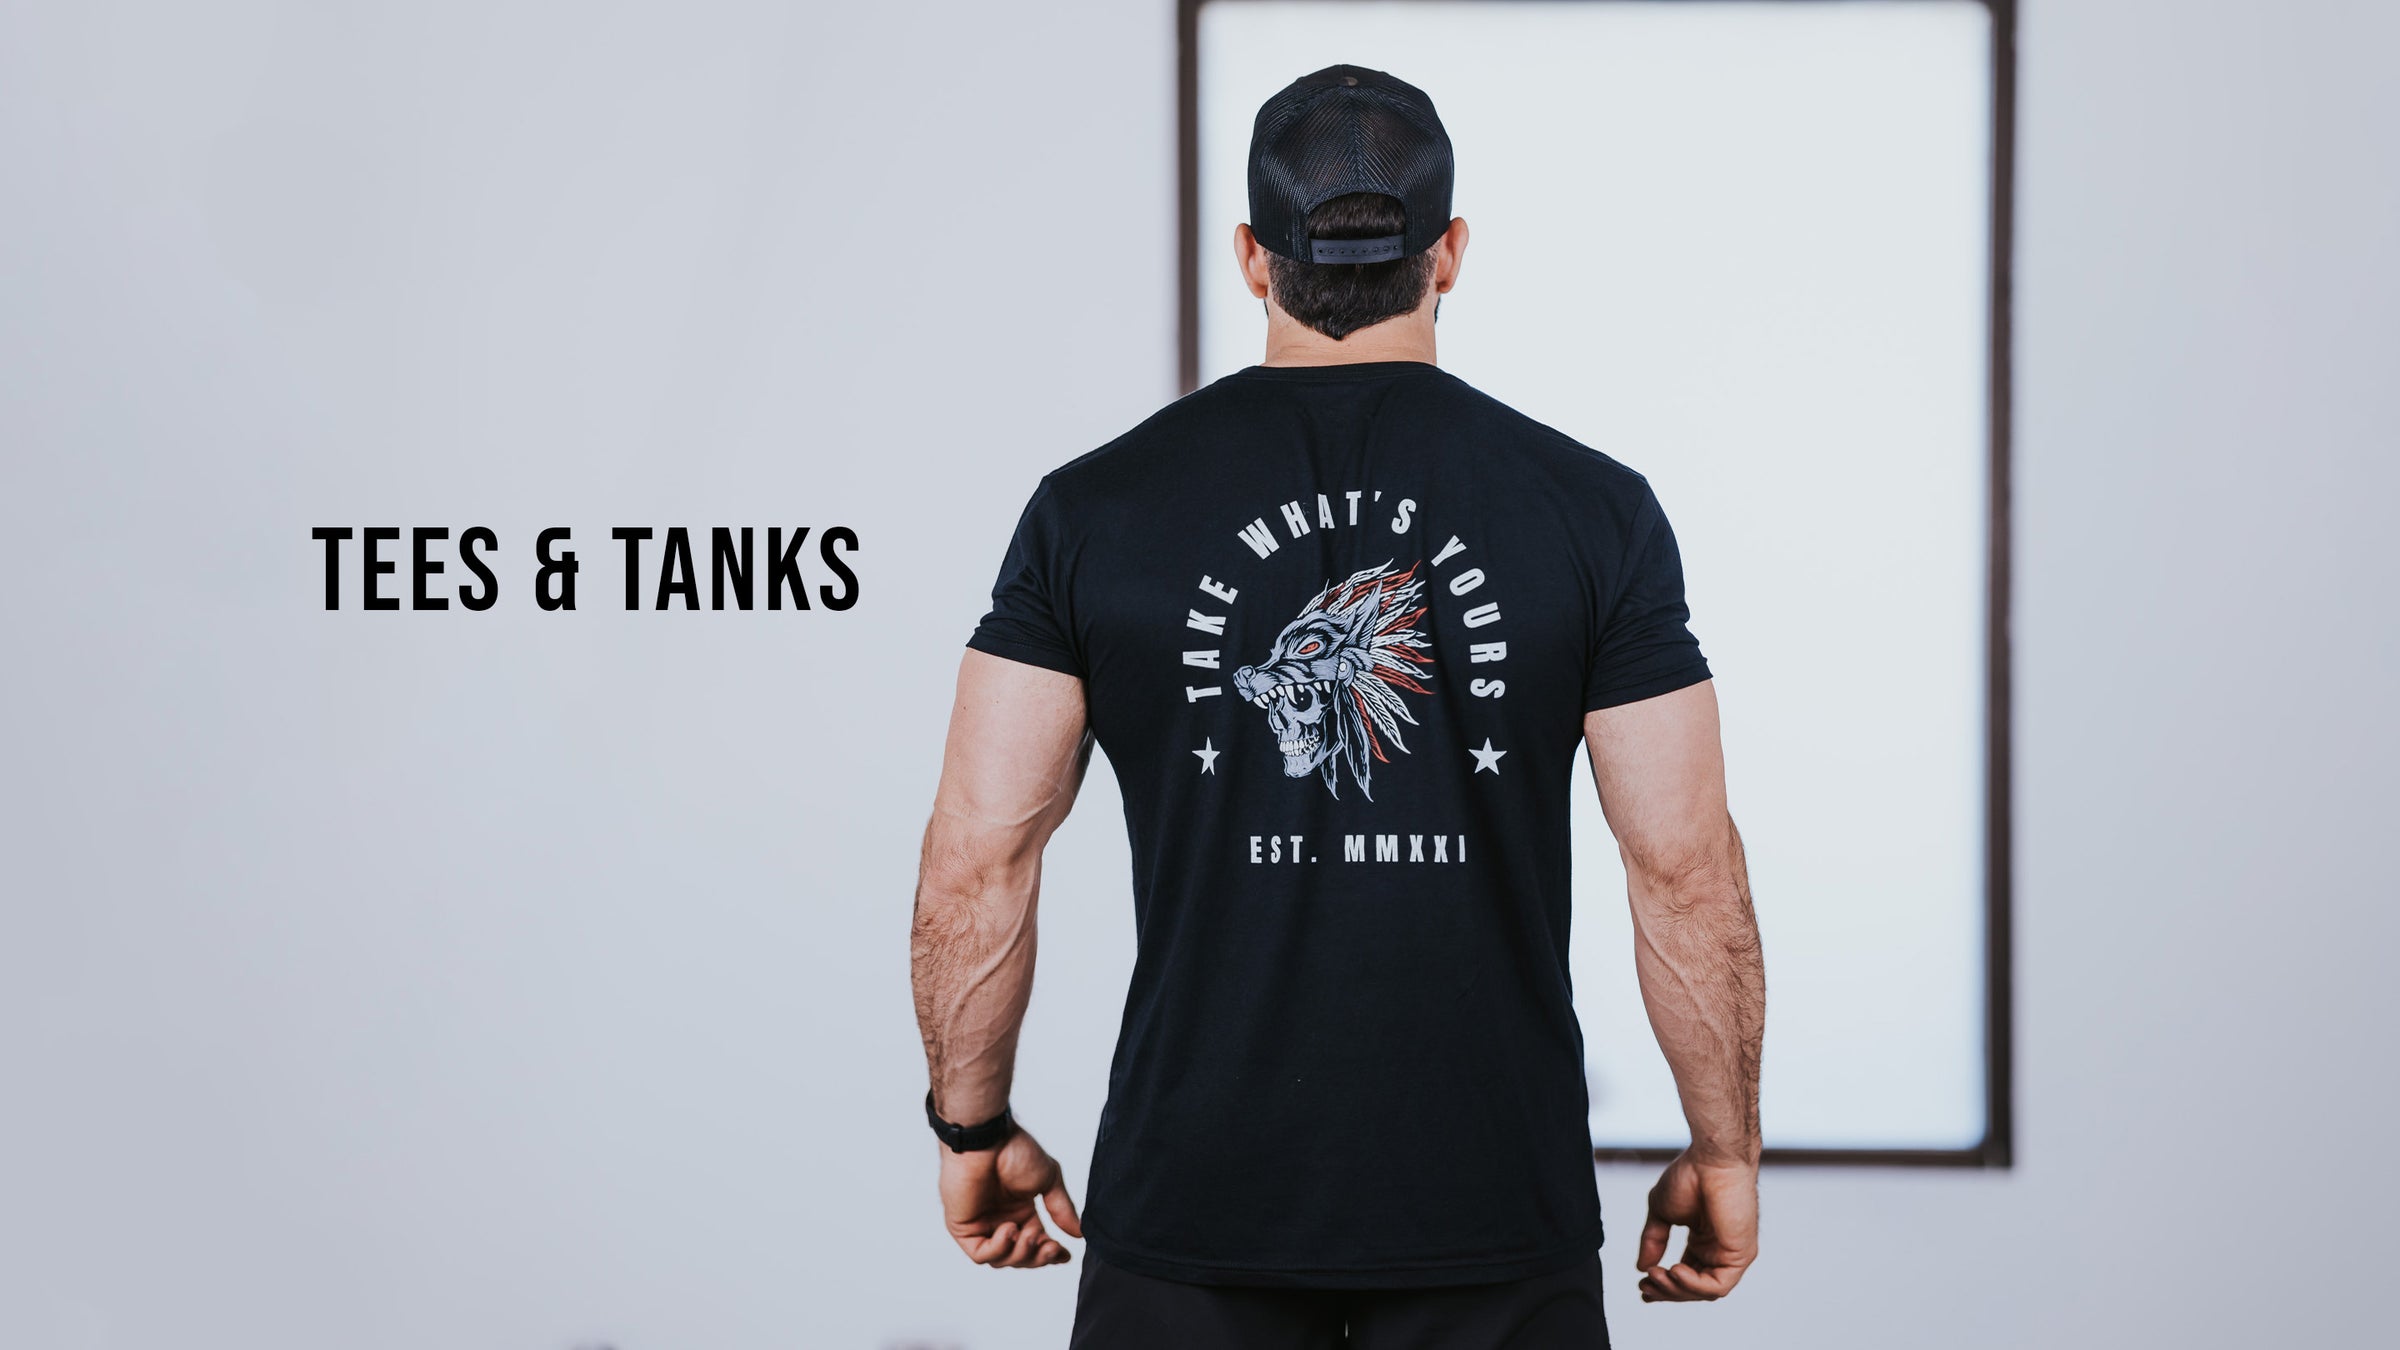 Impulse- Mens Shirts and Tanks